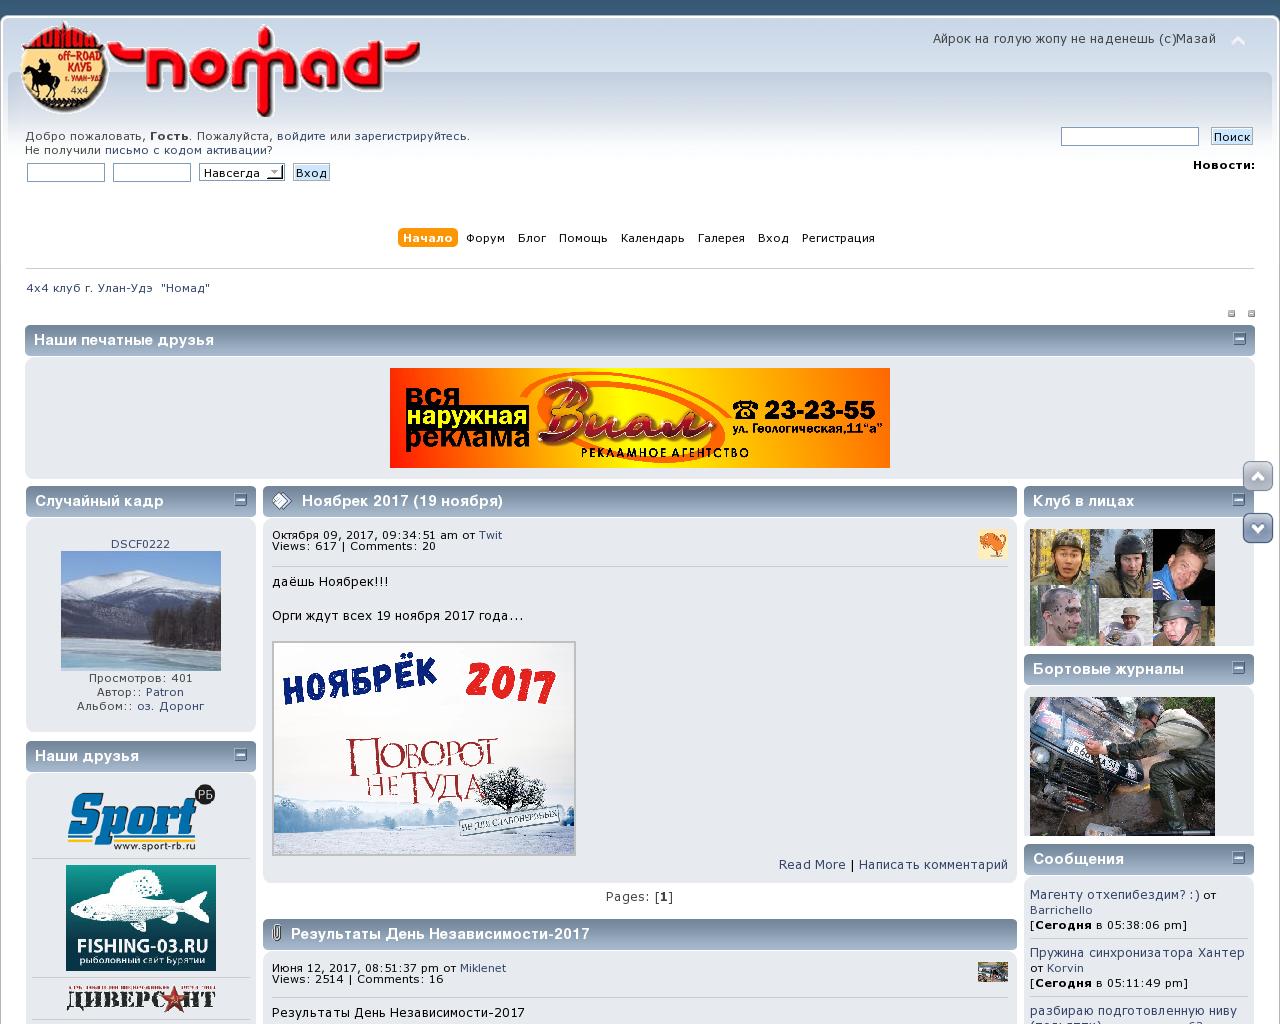 Изображение сайта nomados.ru в разрешении 1280x1024